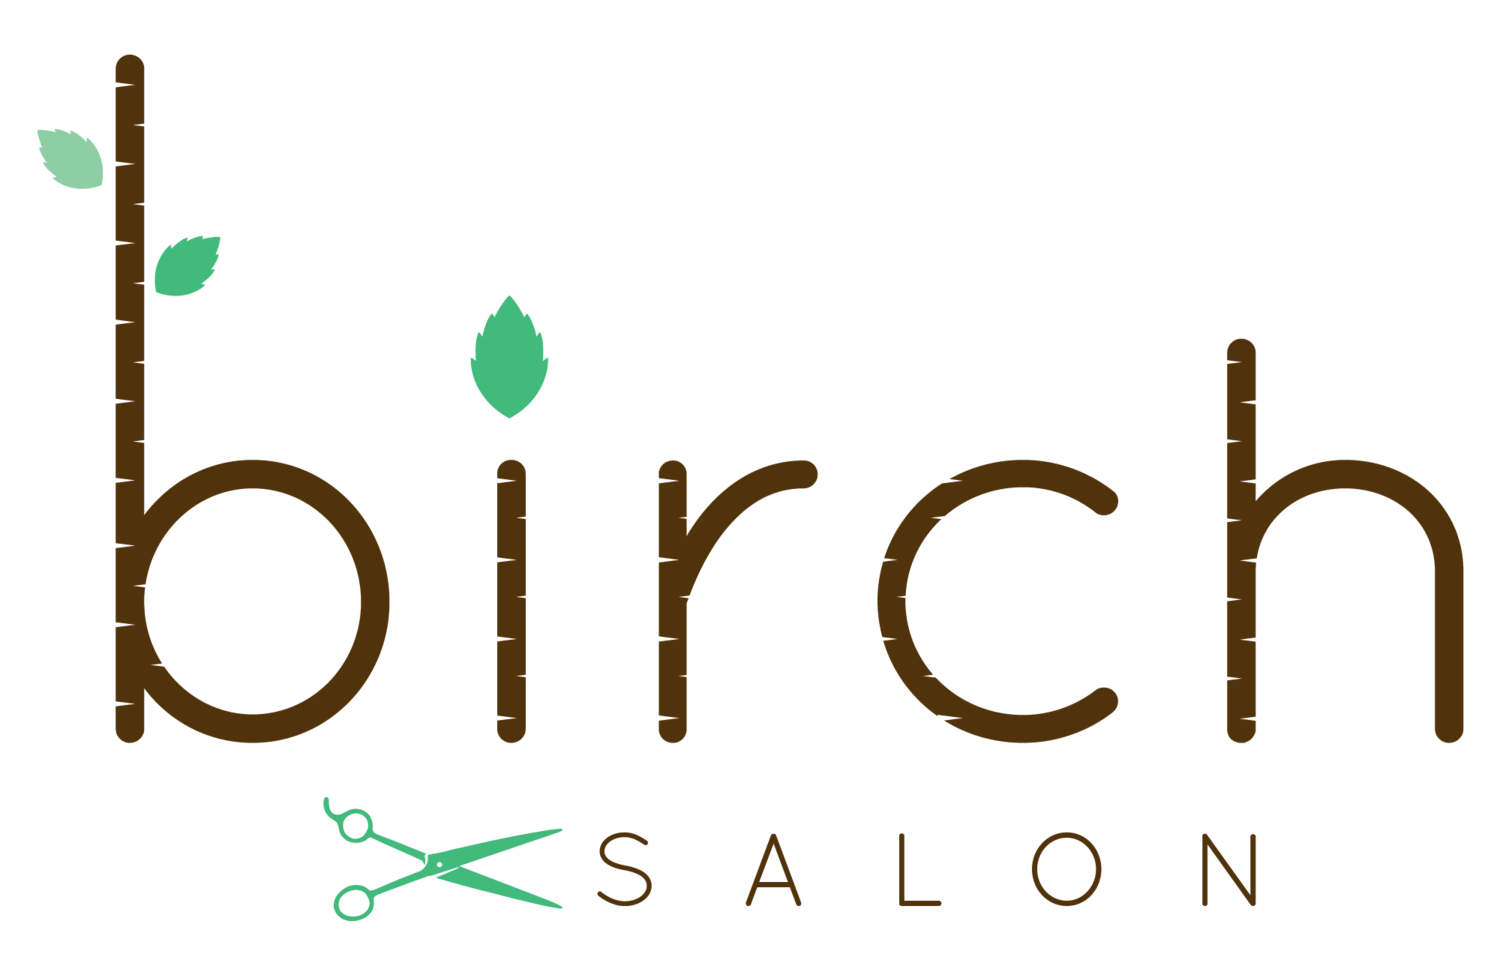 Birch Salon